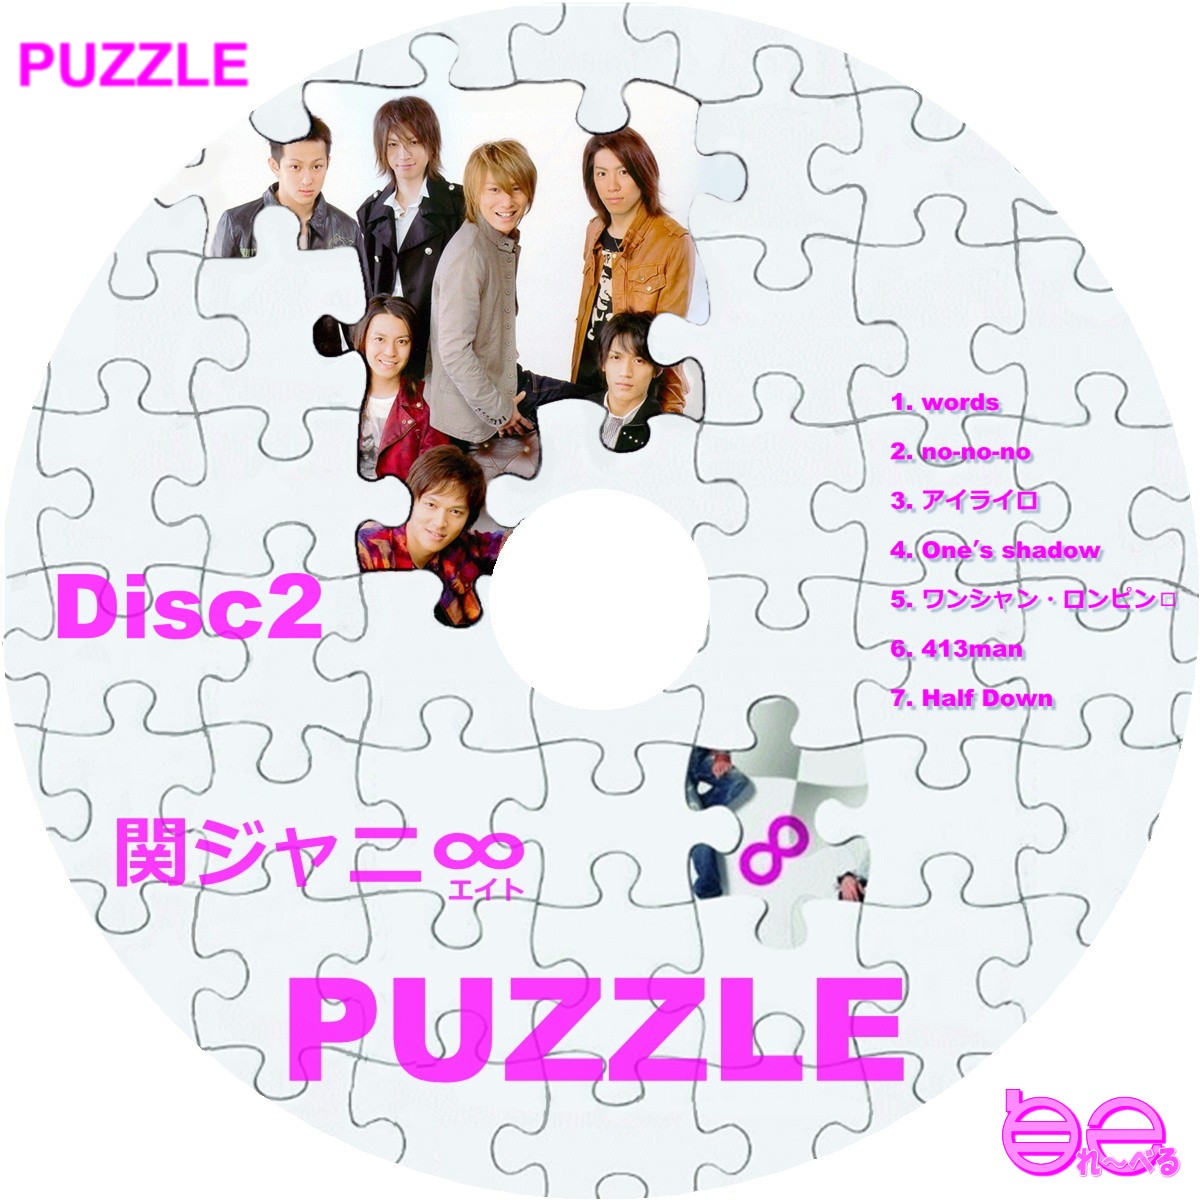 関ジャニ∞ DVD TOUR 2∞9 PUZZLE ∞笑ドッキリ盤 - ミュージック